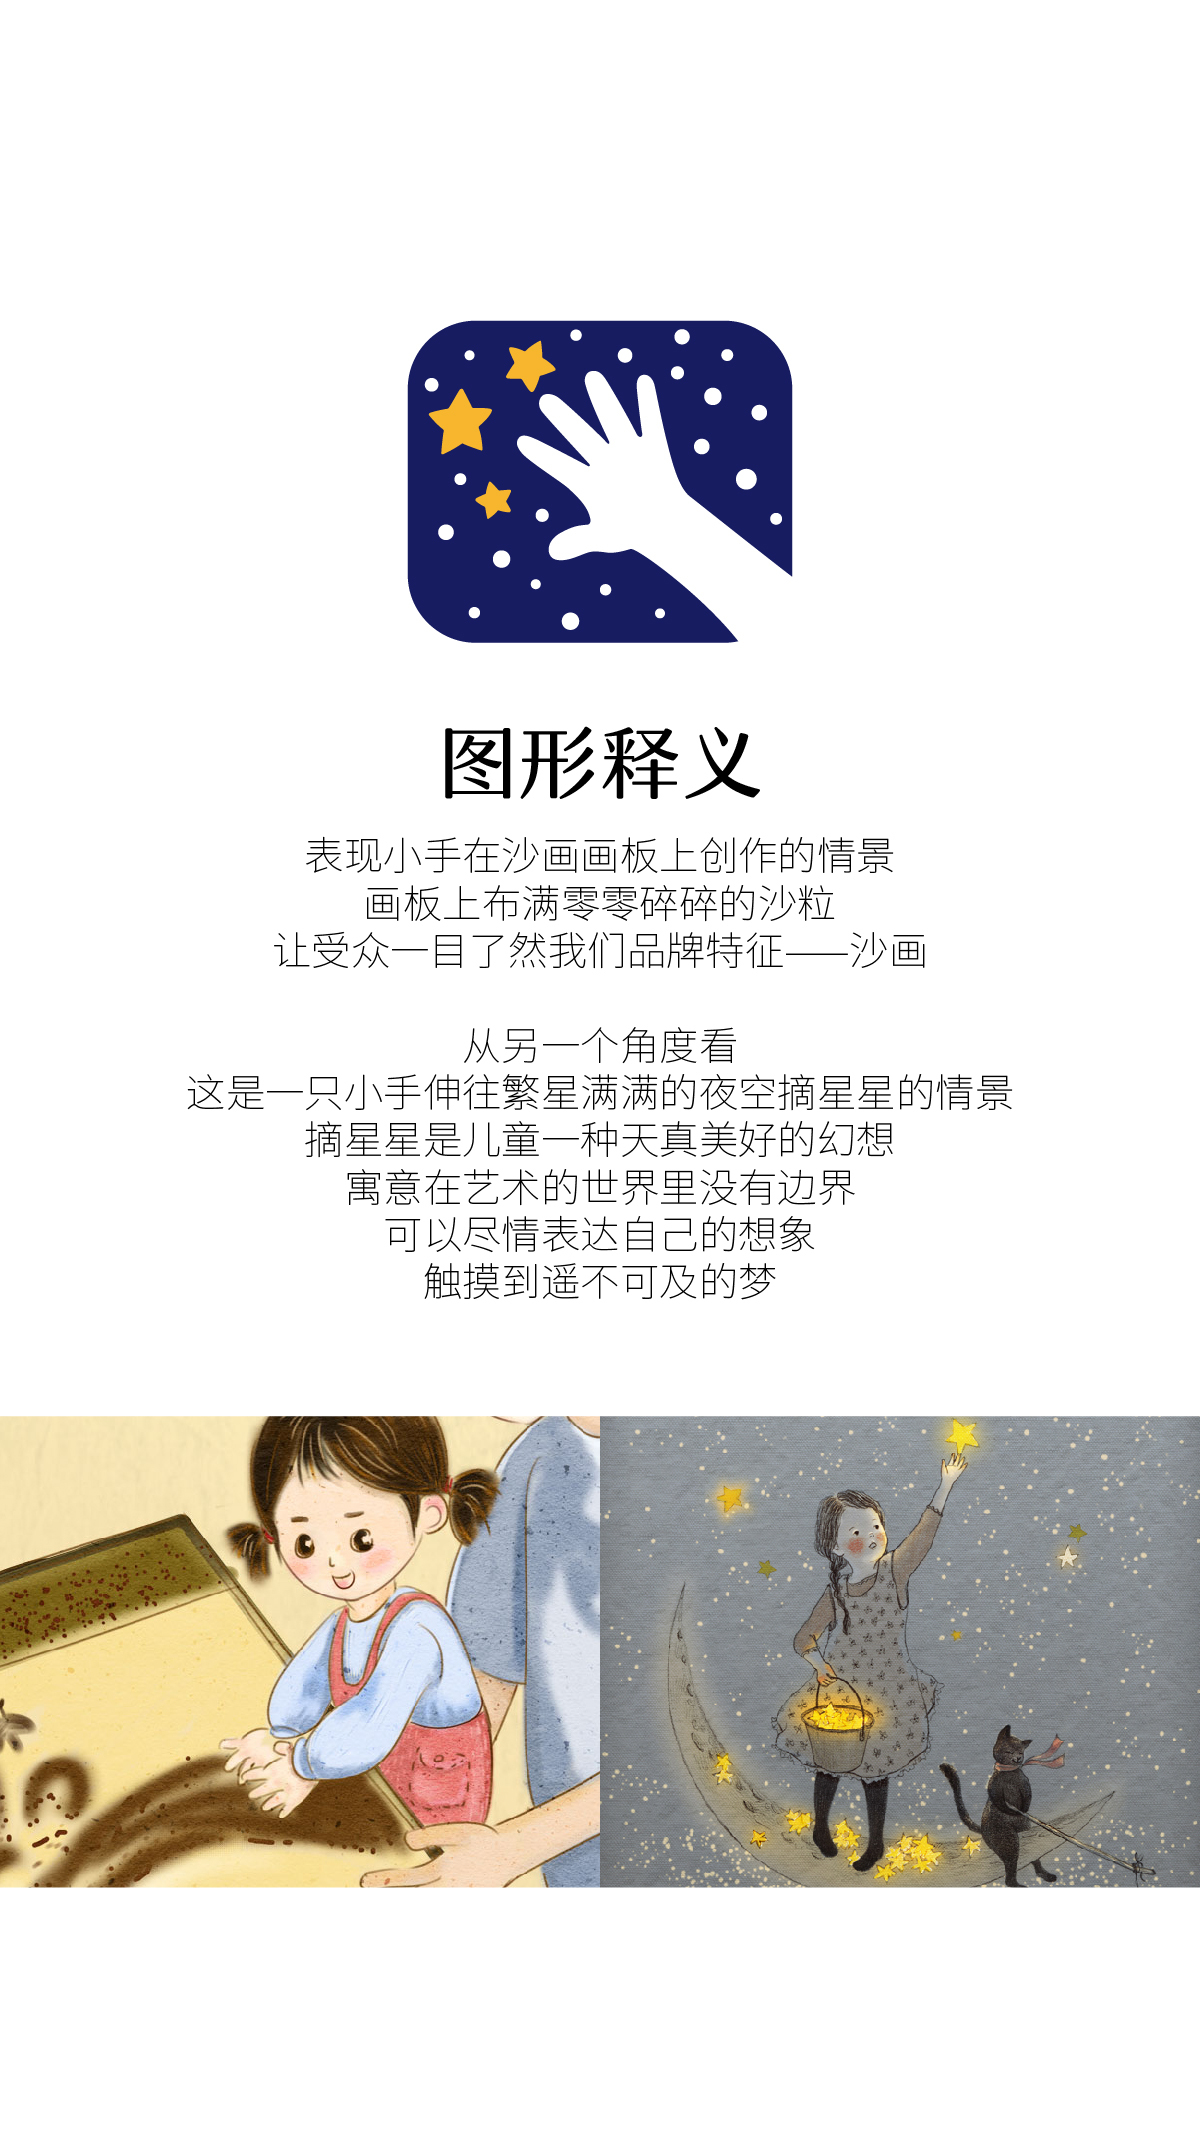 沙枫沙韵-儿童沙画艺术培训品牌Logo图1